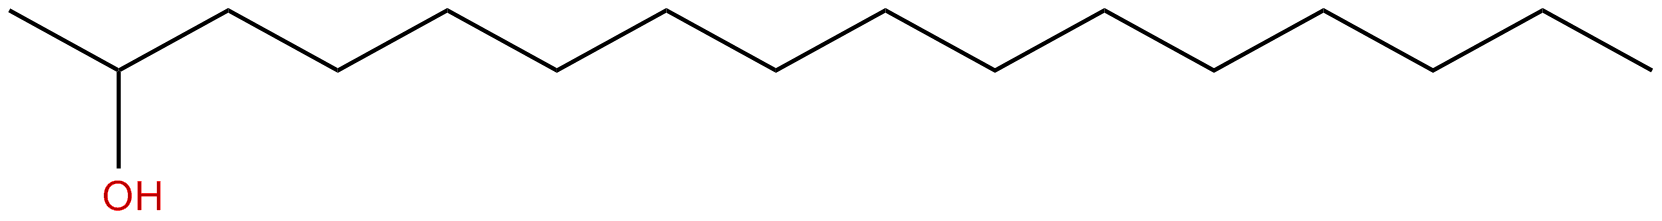 Image of 2-hexadecanol